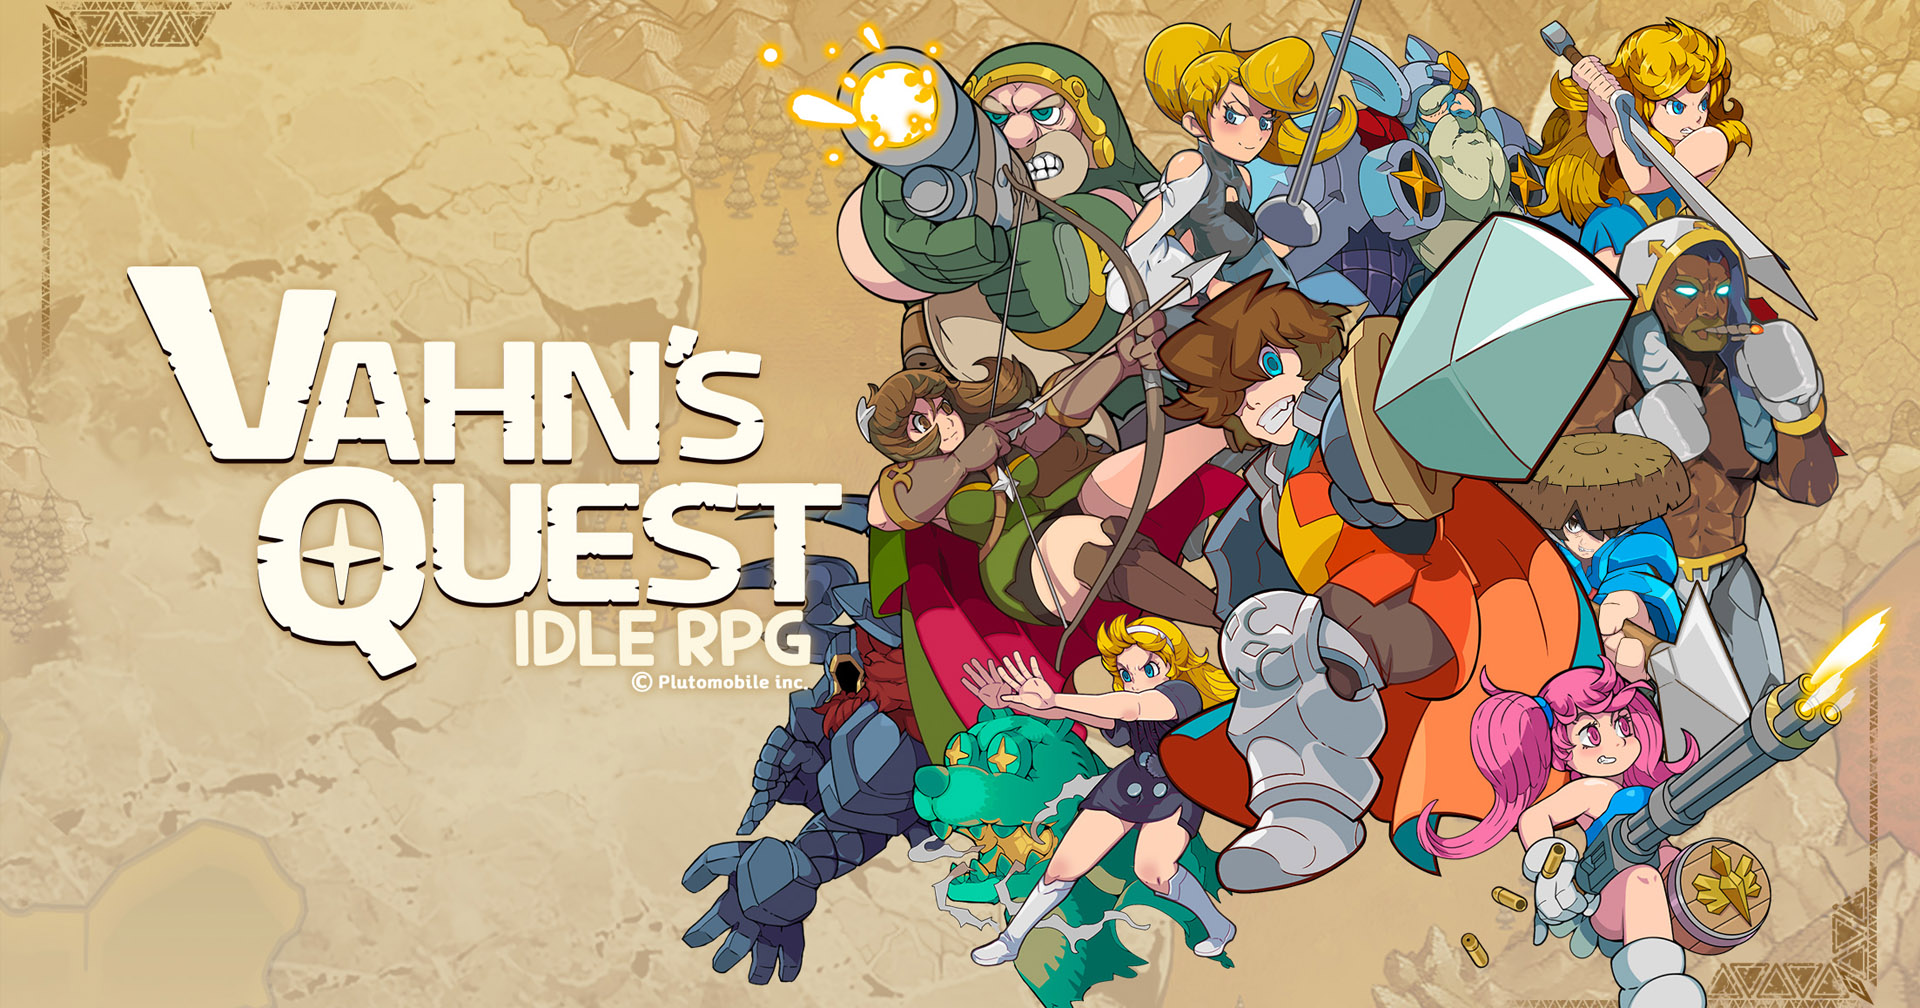 [รีวิวเกม] Vahn’s Quest เกมมือถือ RPG แนว idle เล่นง่าย มีภาษาไทย